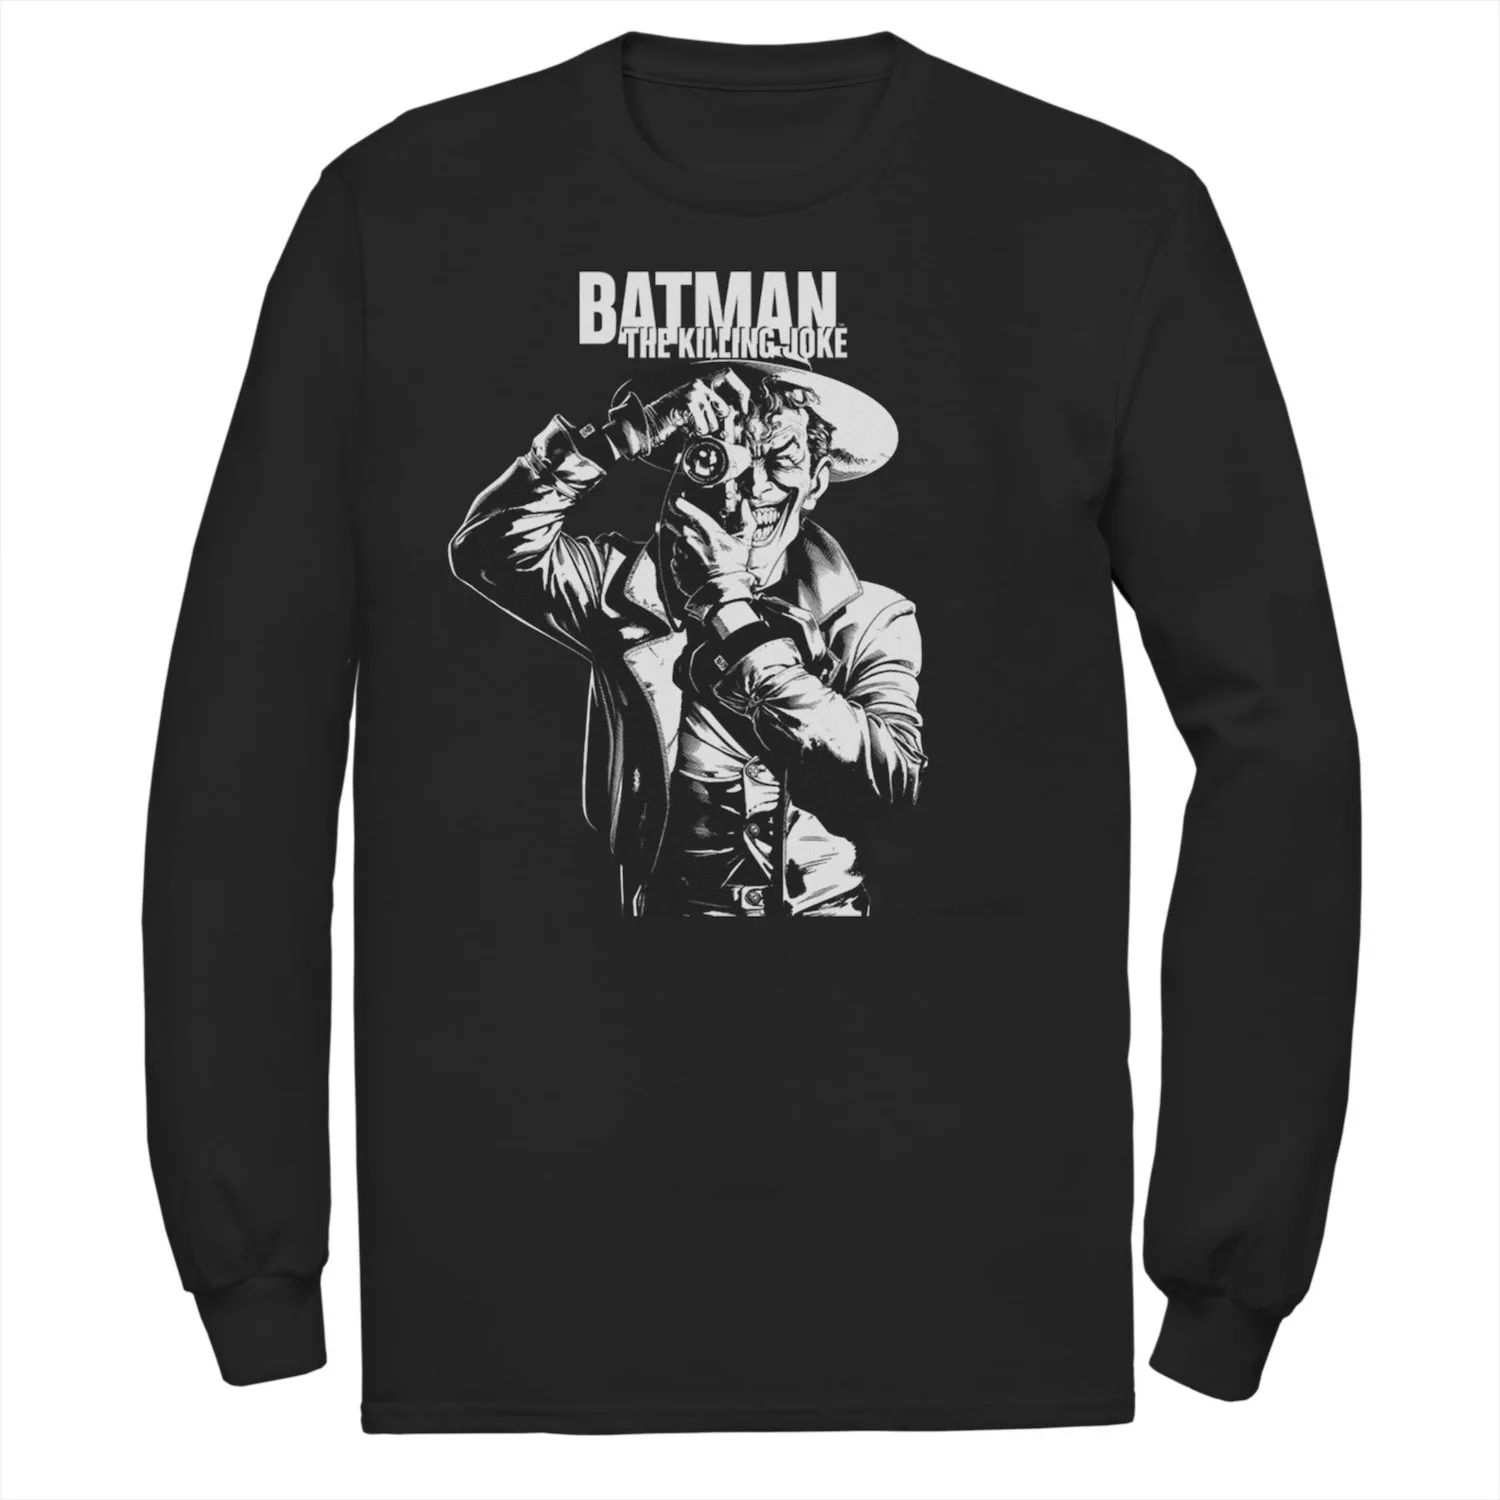 Мужская футболка DC Comics Batman The Killing Joke Tee faust ch phillips g batman the killing joke